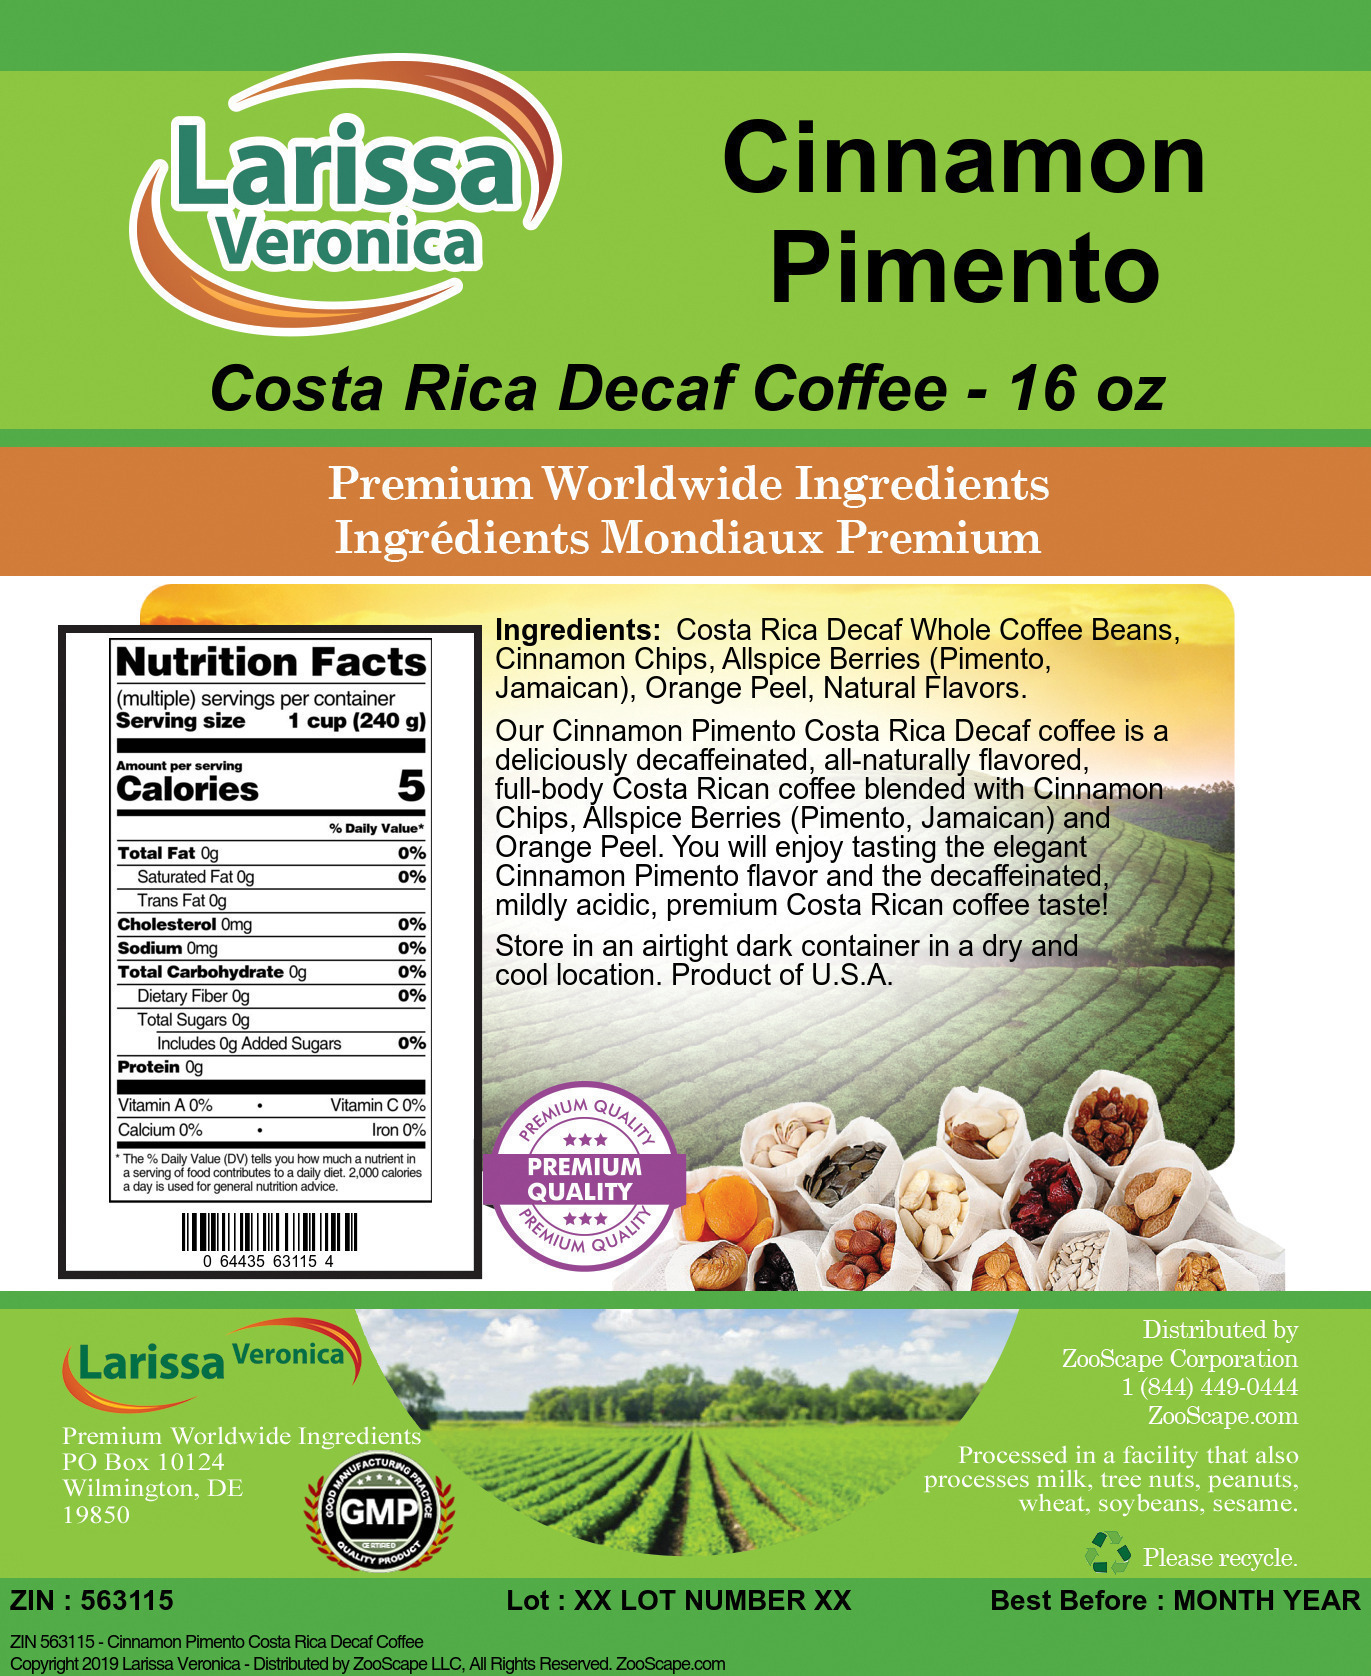 Cinnamon Pimento Costa Rica Decaf Coffee - Label